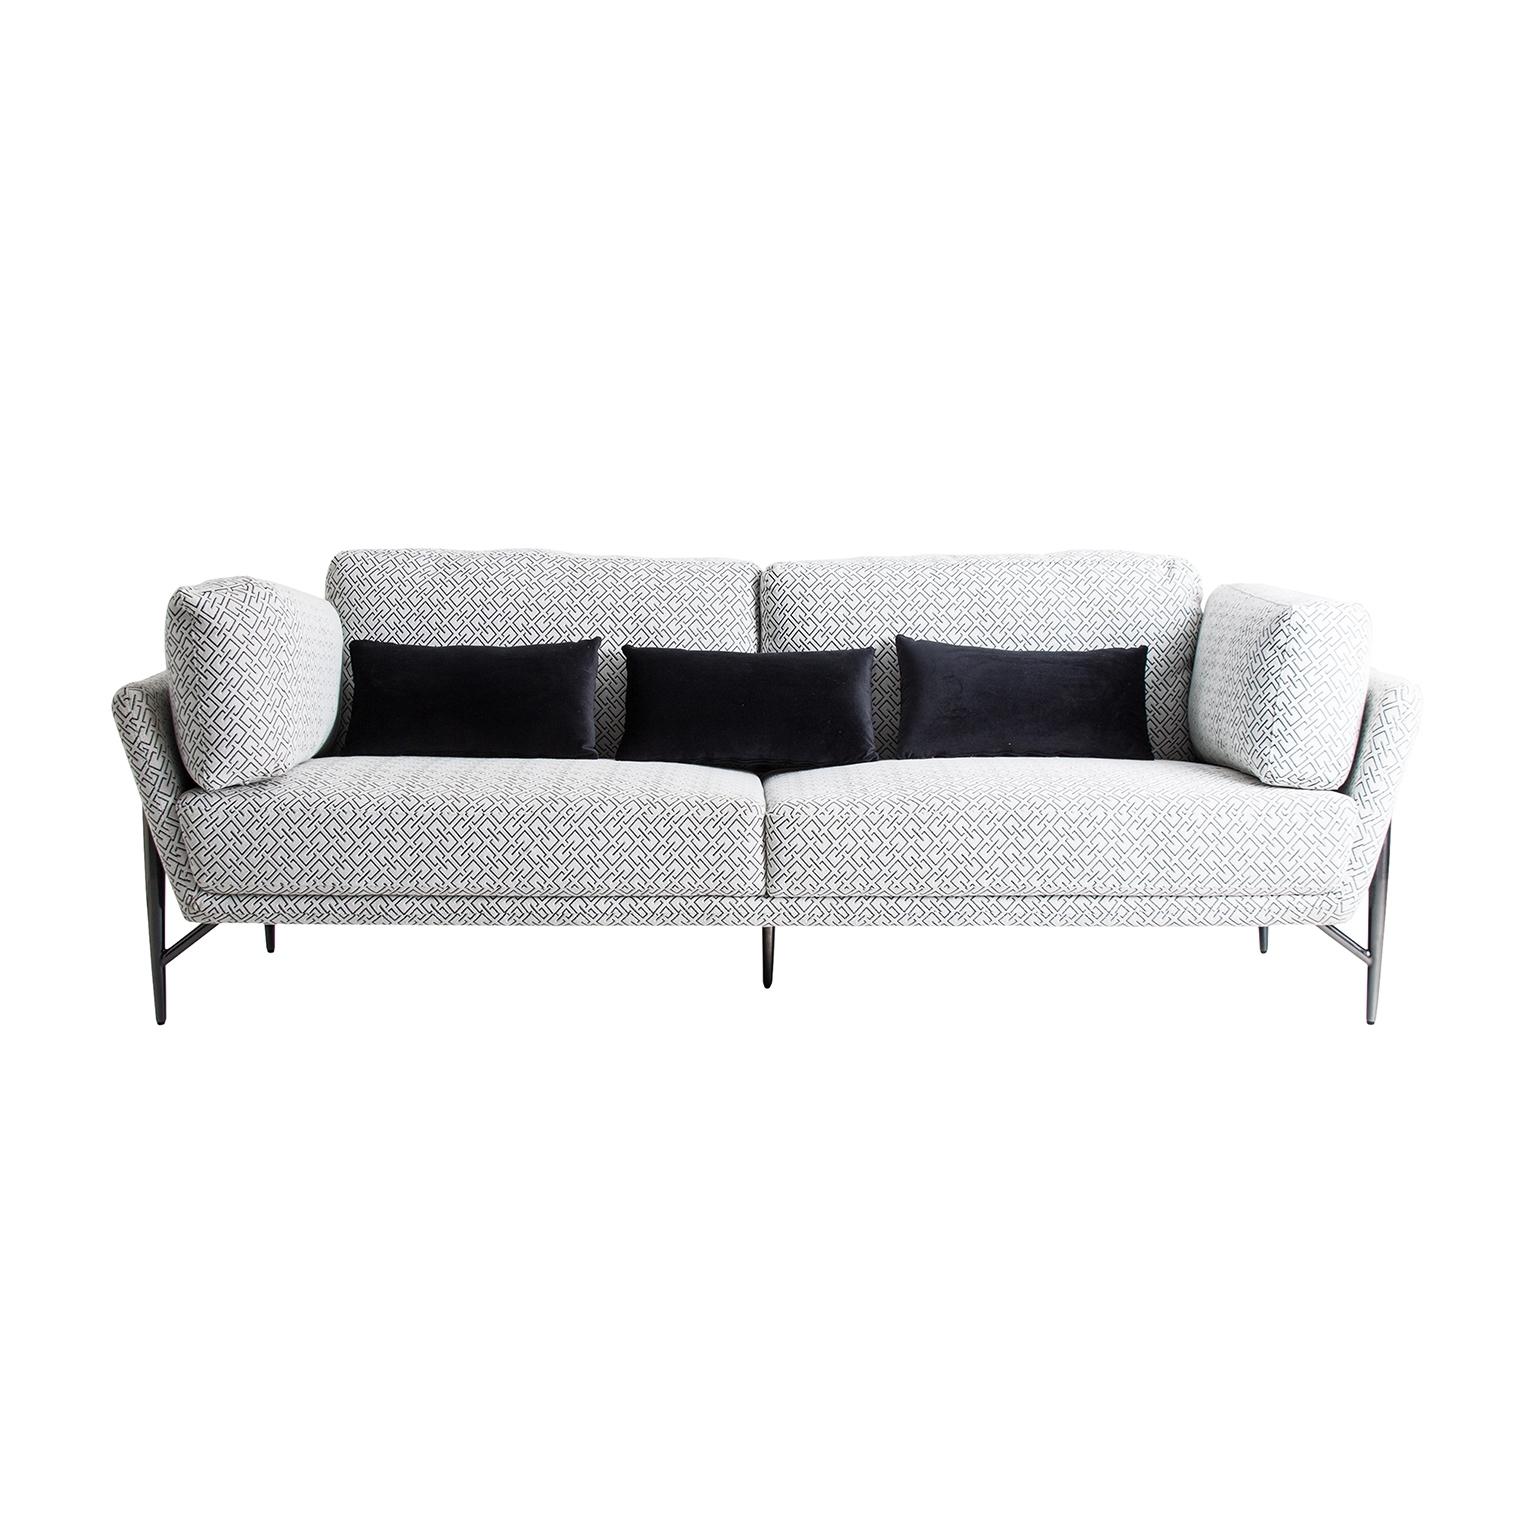 Mid-Century Modern Midcentury Style Black and White Velvet Design Sofa